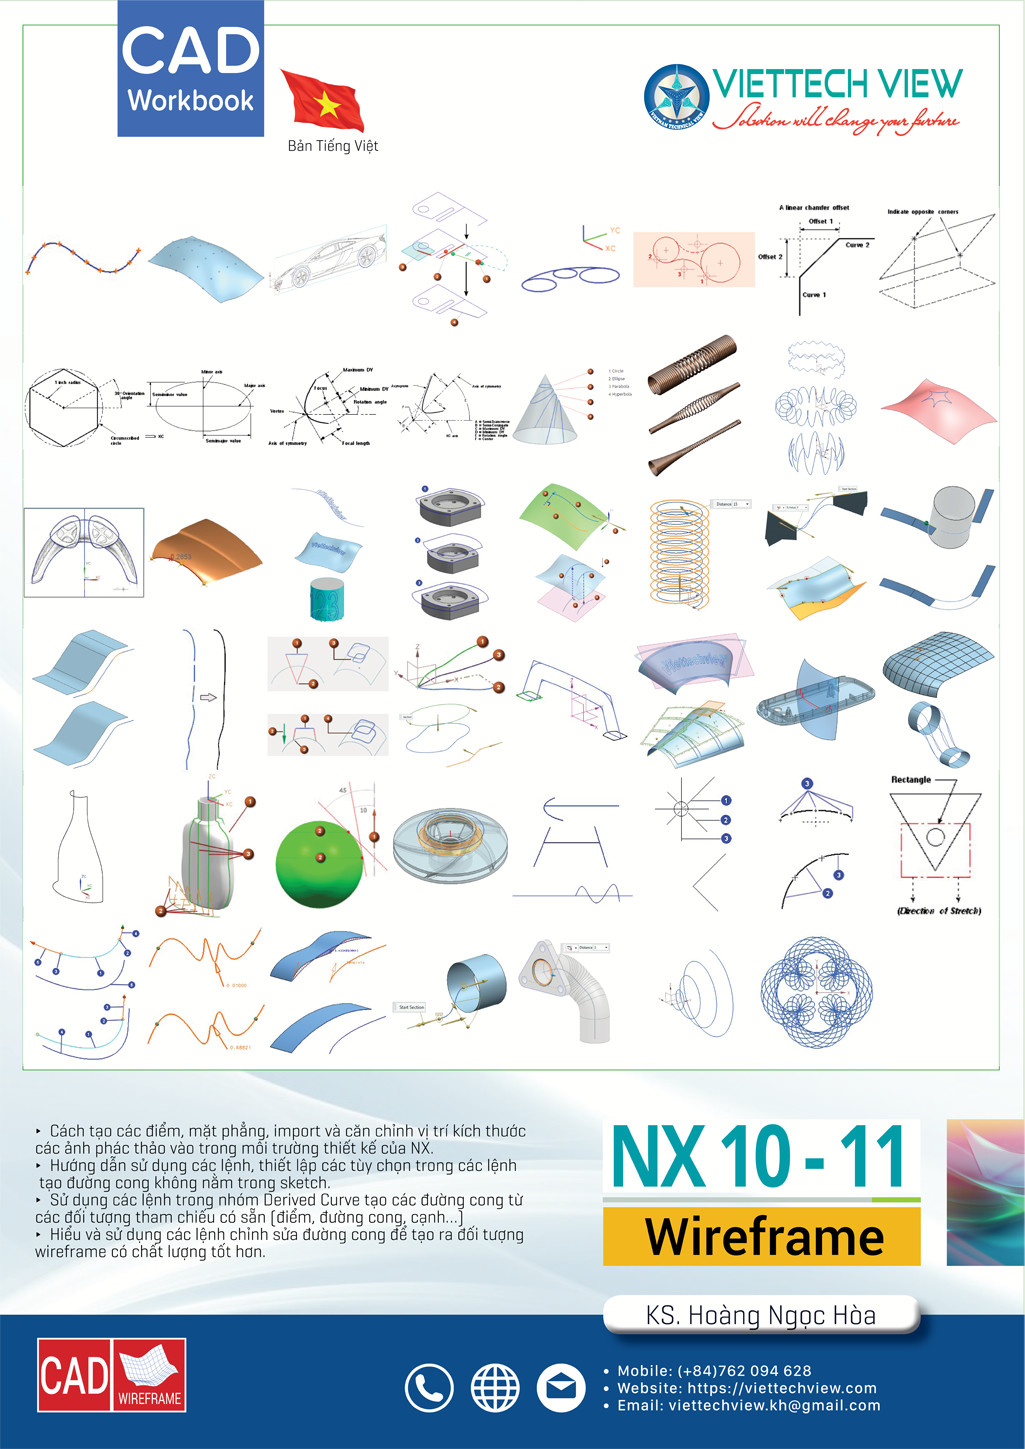 NX - Khung dây là một trong những giải pháp thiết kế khung dây công nghiệp hàng đầu trên thị trường. Hãy xem hình ảnh liên quan để hiểu rõ hơn về tính năng và ứng dụng của NX - Khung dây trong ngành công nghiệp hiện nay.